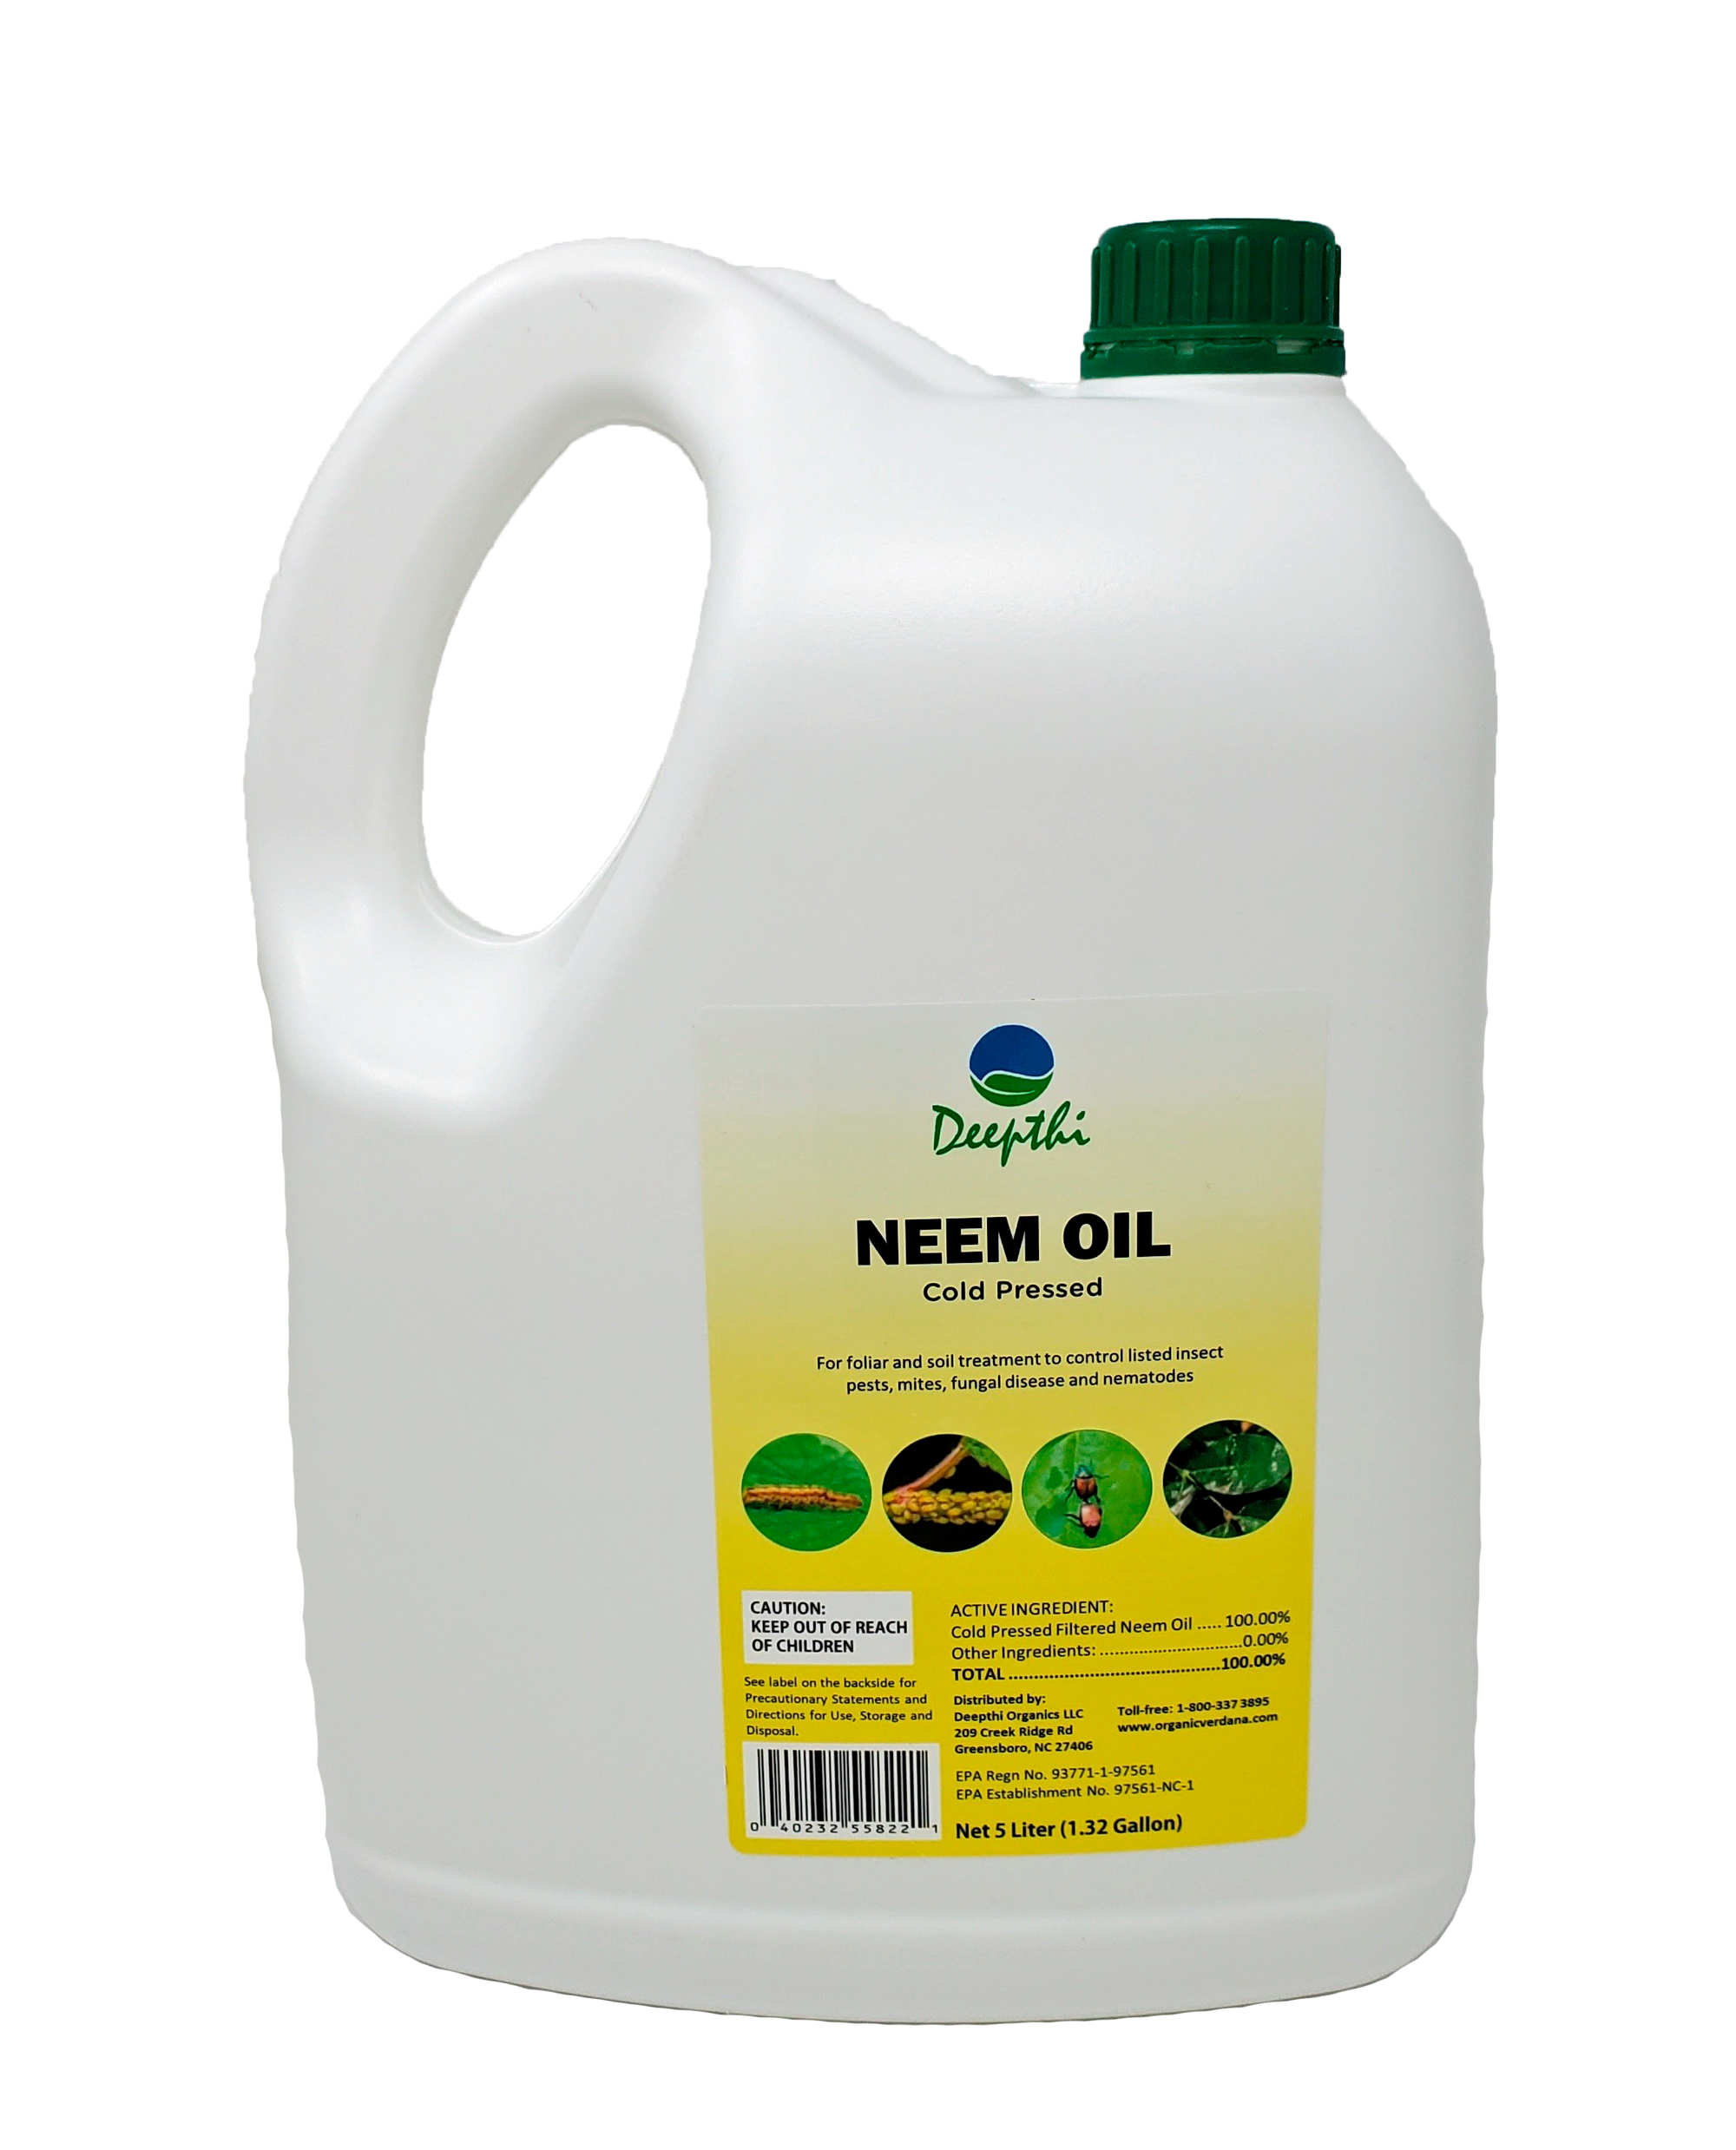 Deepthi Neem Oil - 5 Liter (1.32 Gallon)